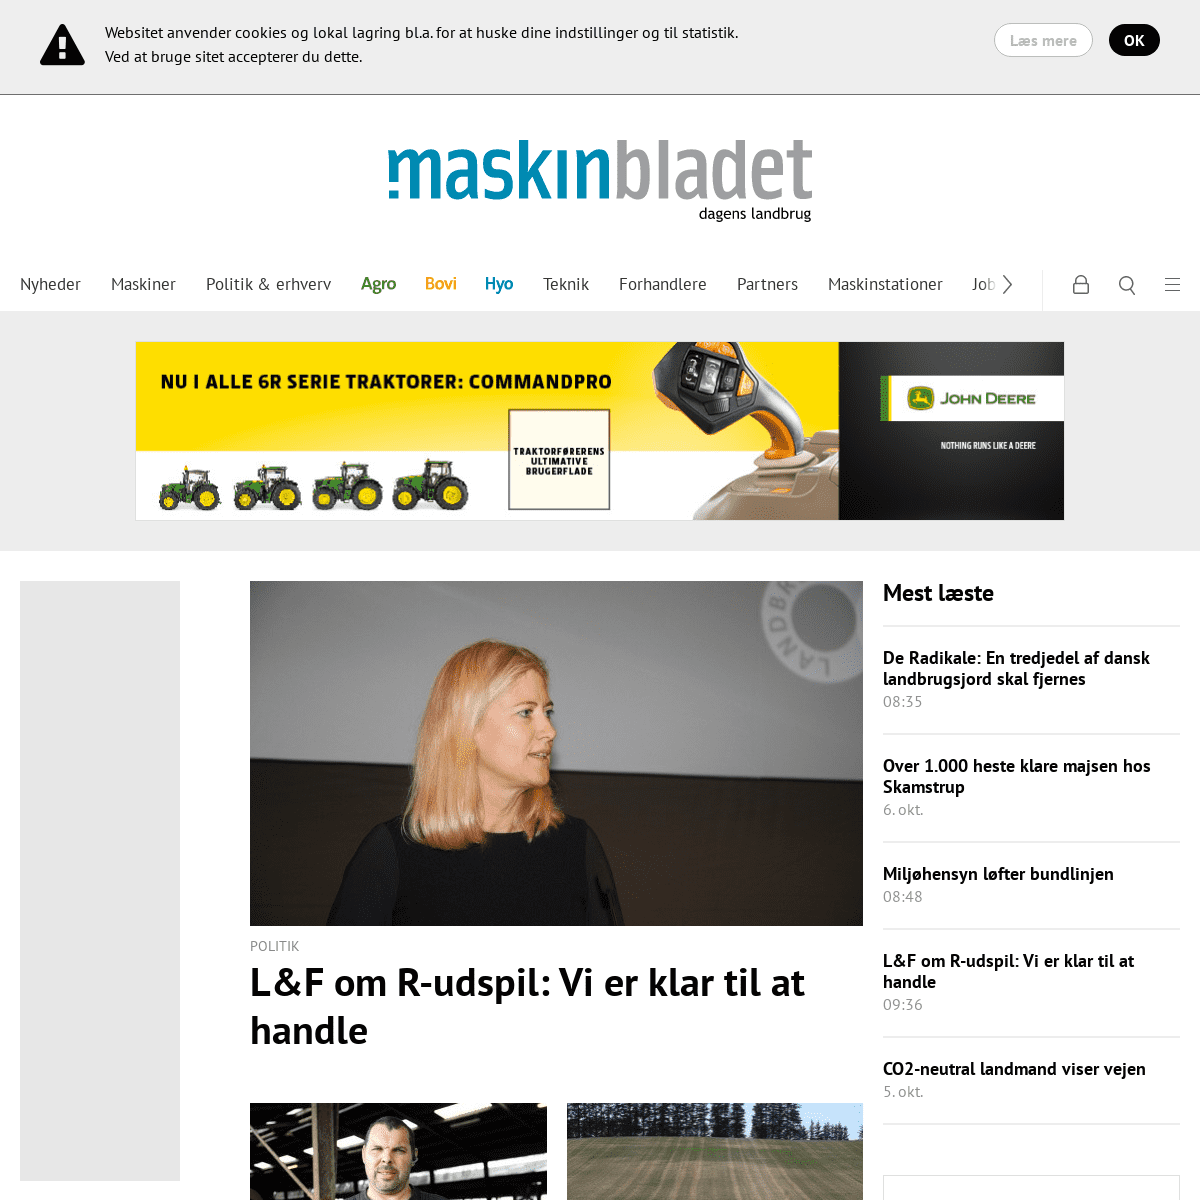 A complete backup of maskinbladet.dk